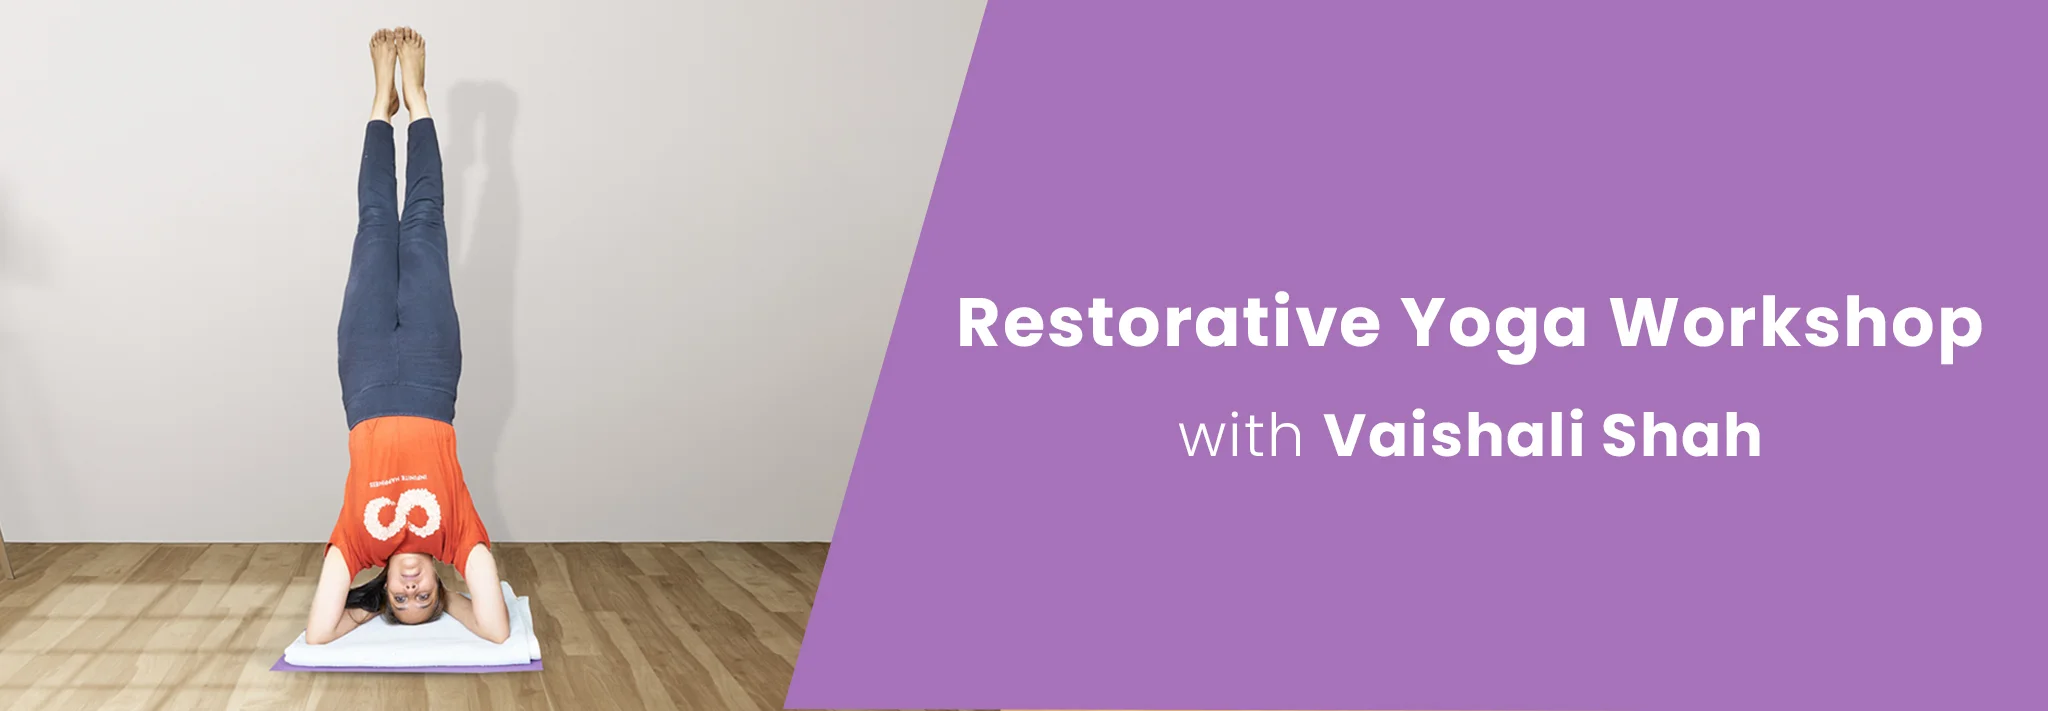 Restorative Yoga with Vaishali Shah Banner | Yog.org